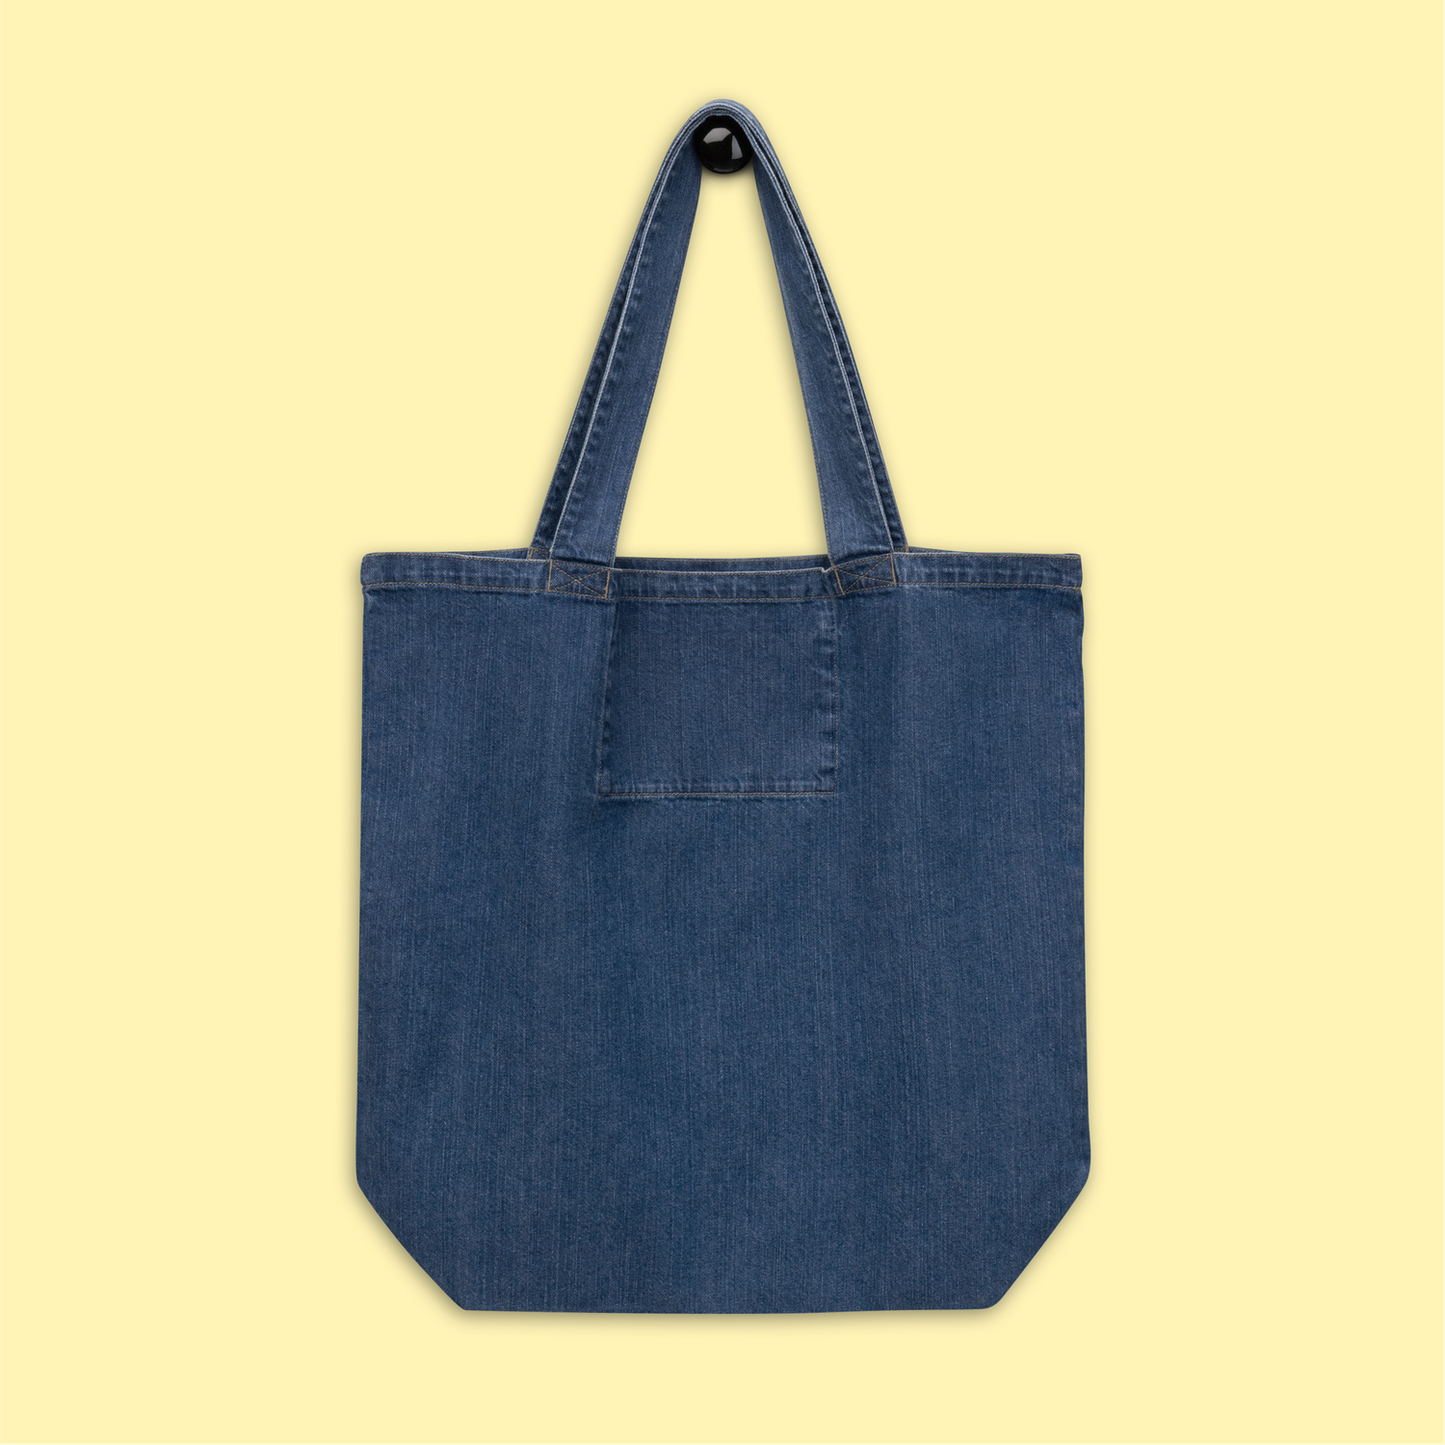 "This Is My Tote Bag" Organic Denim Tote (Lemon)